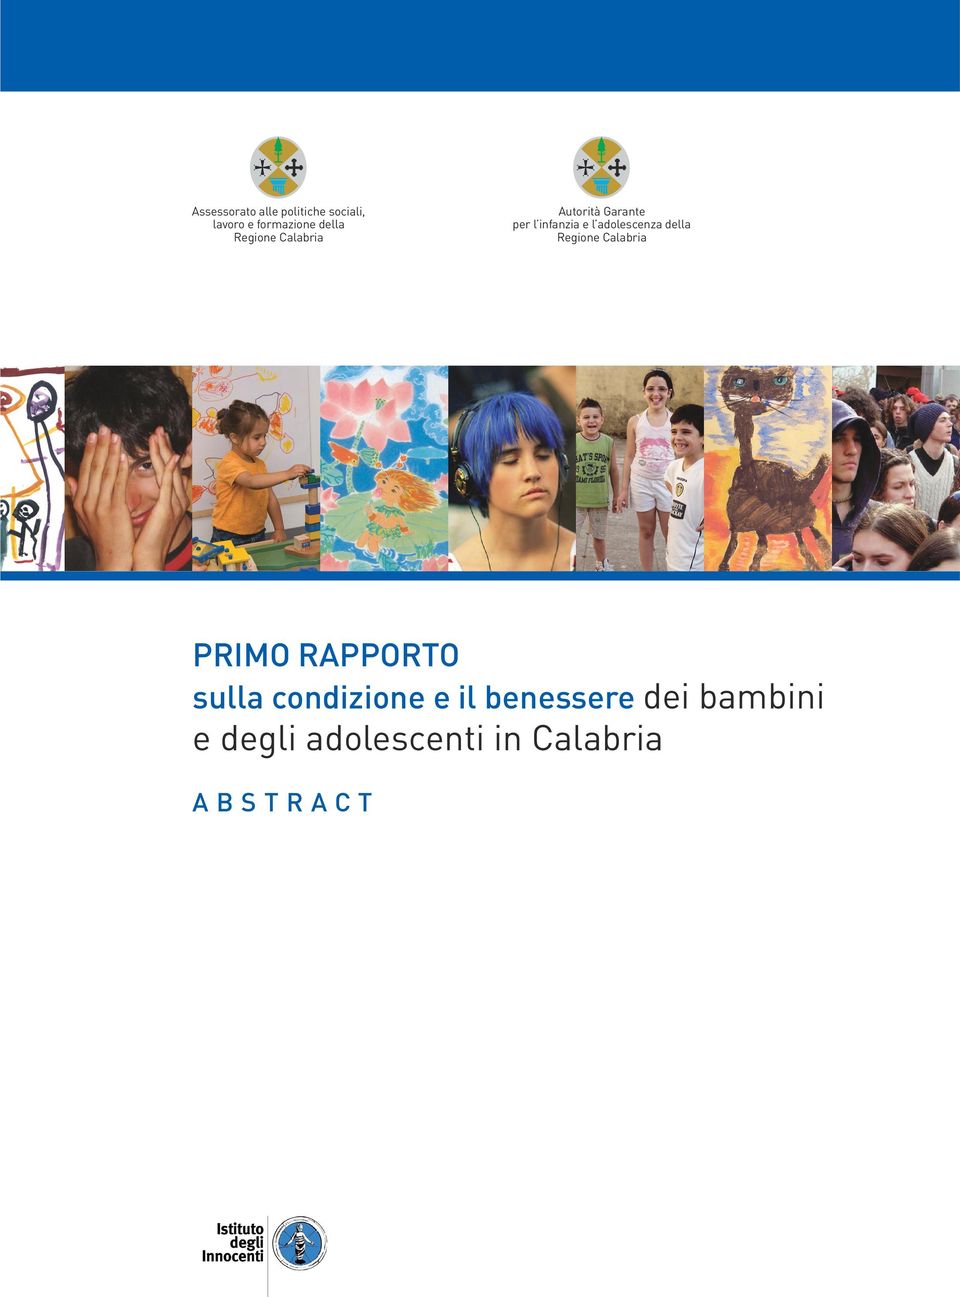 adolescenza della Regione Calabria Primo rapporto sulla